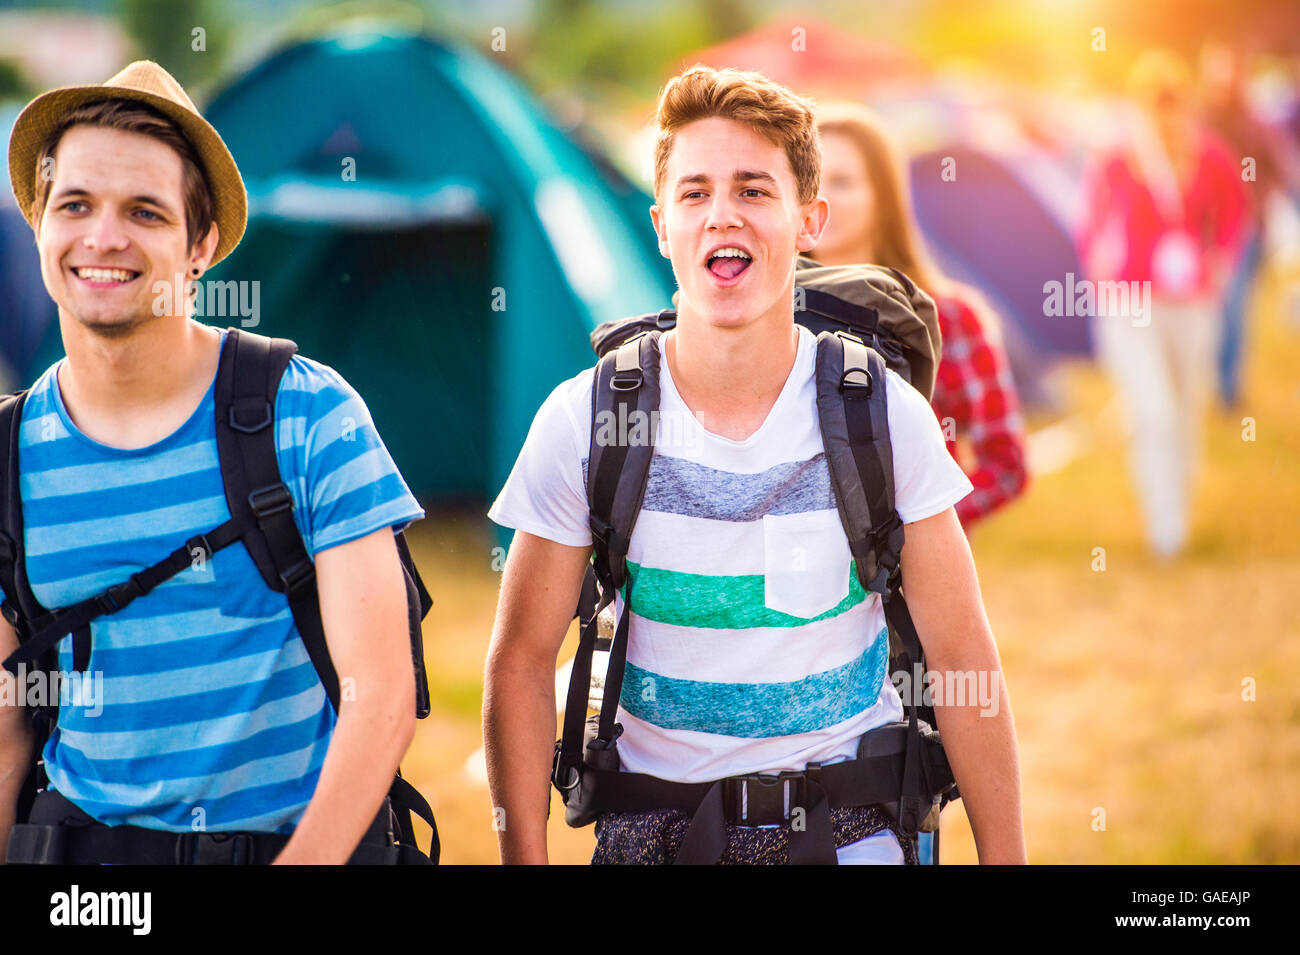 Zwei jungen im Teenageralter mit Rucksäcken, die Ankunft am Musikfestival Stockfoto